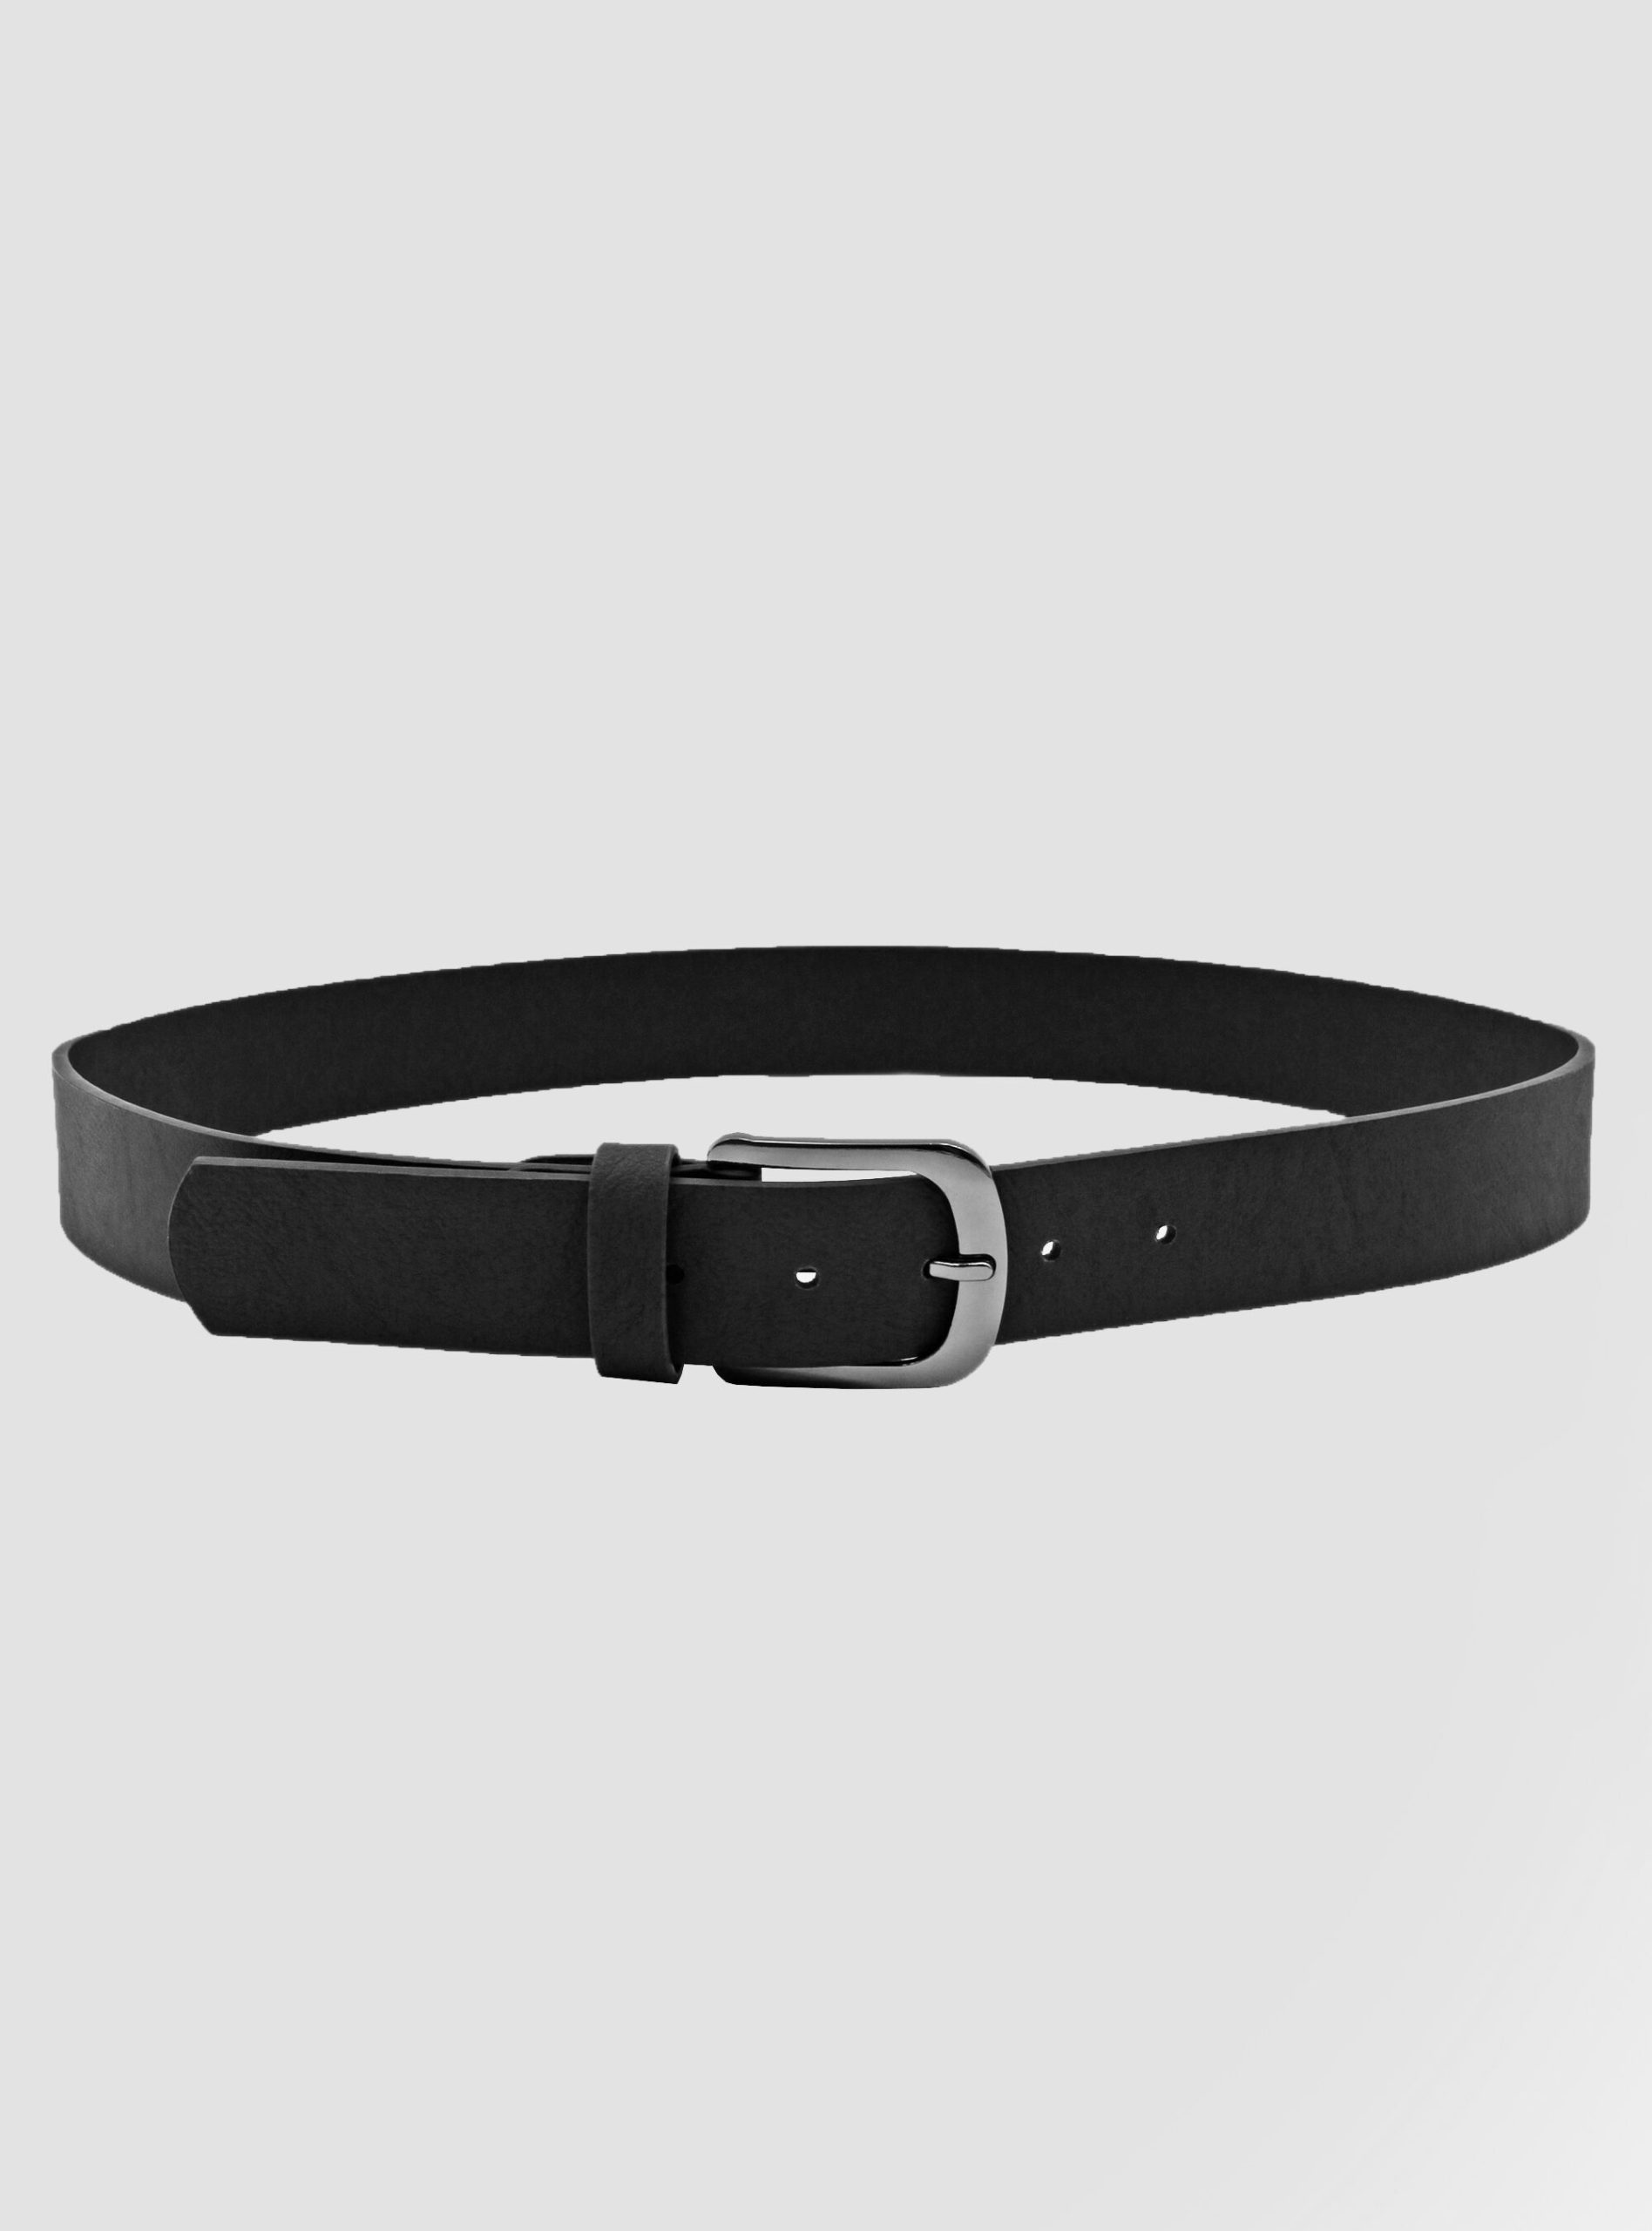 Bk1 Black Gürtel Basic Leather-Effect Belt Männer Reduzierter Preis Alcott – 1